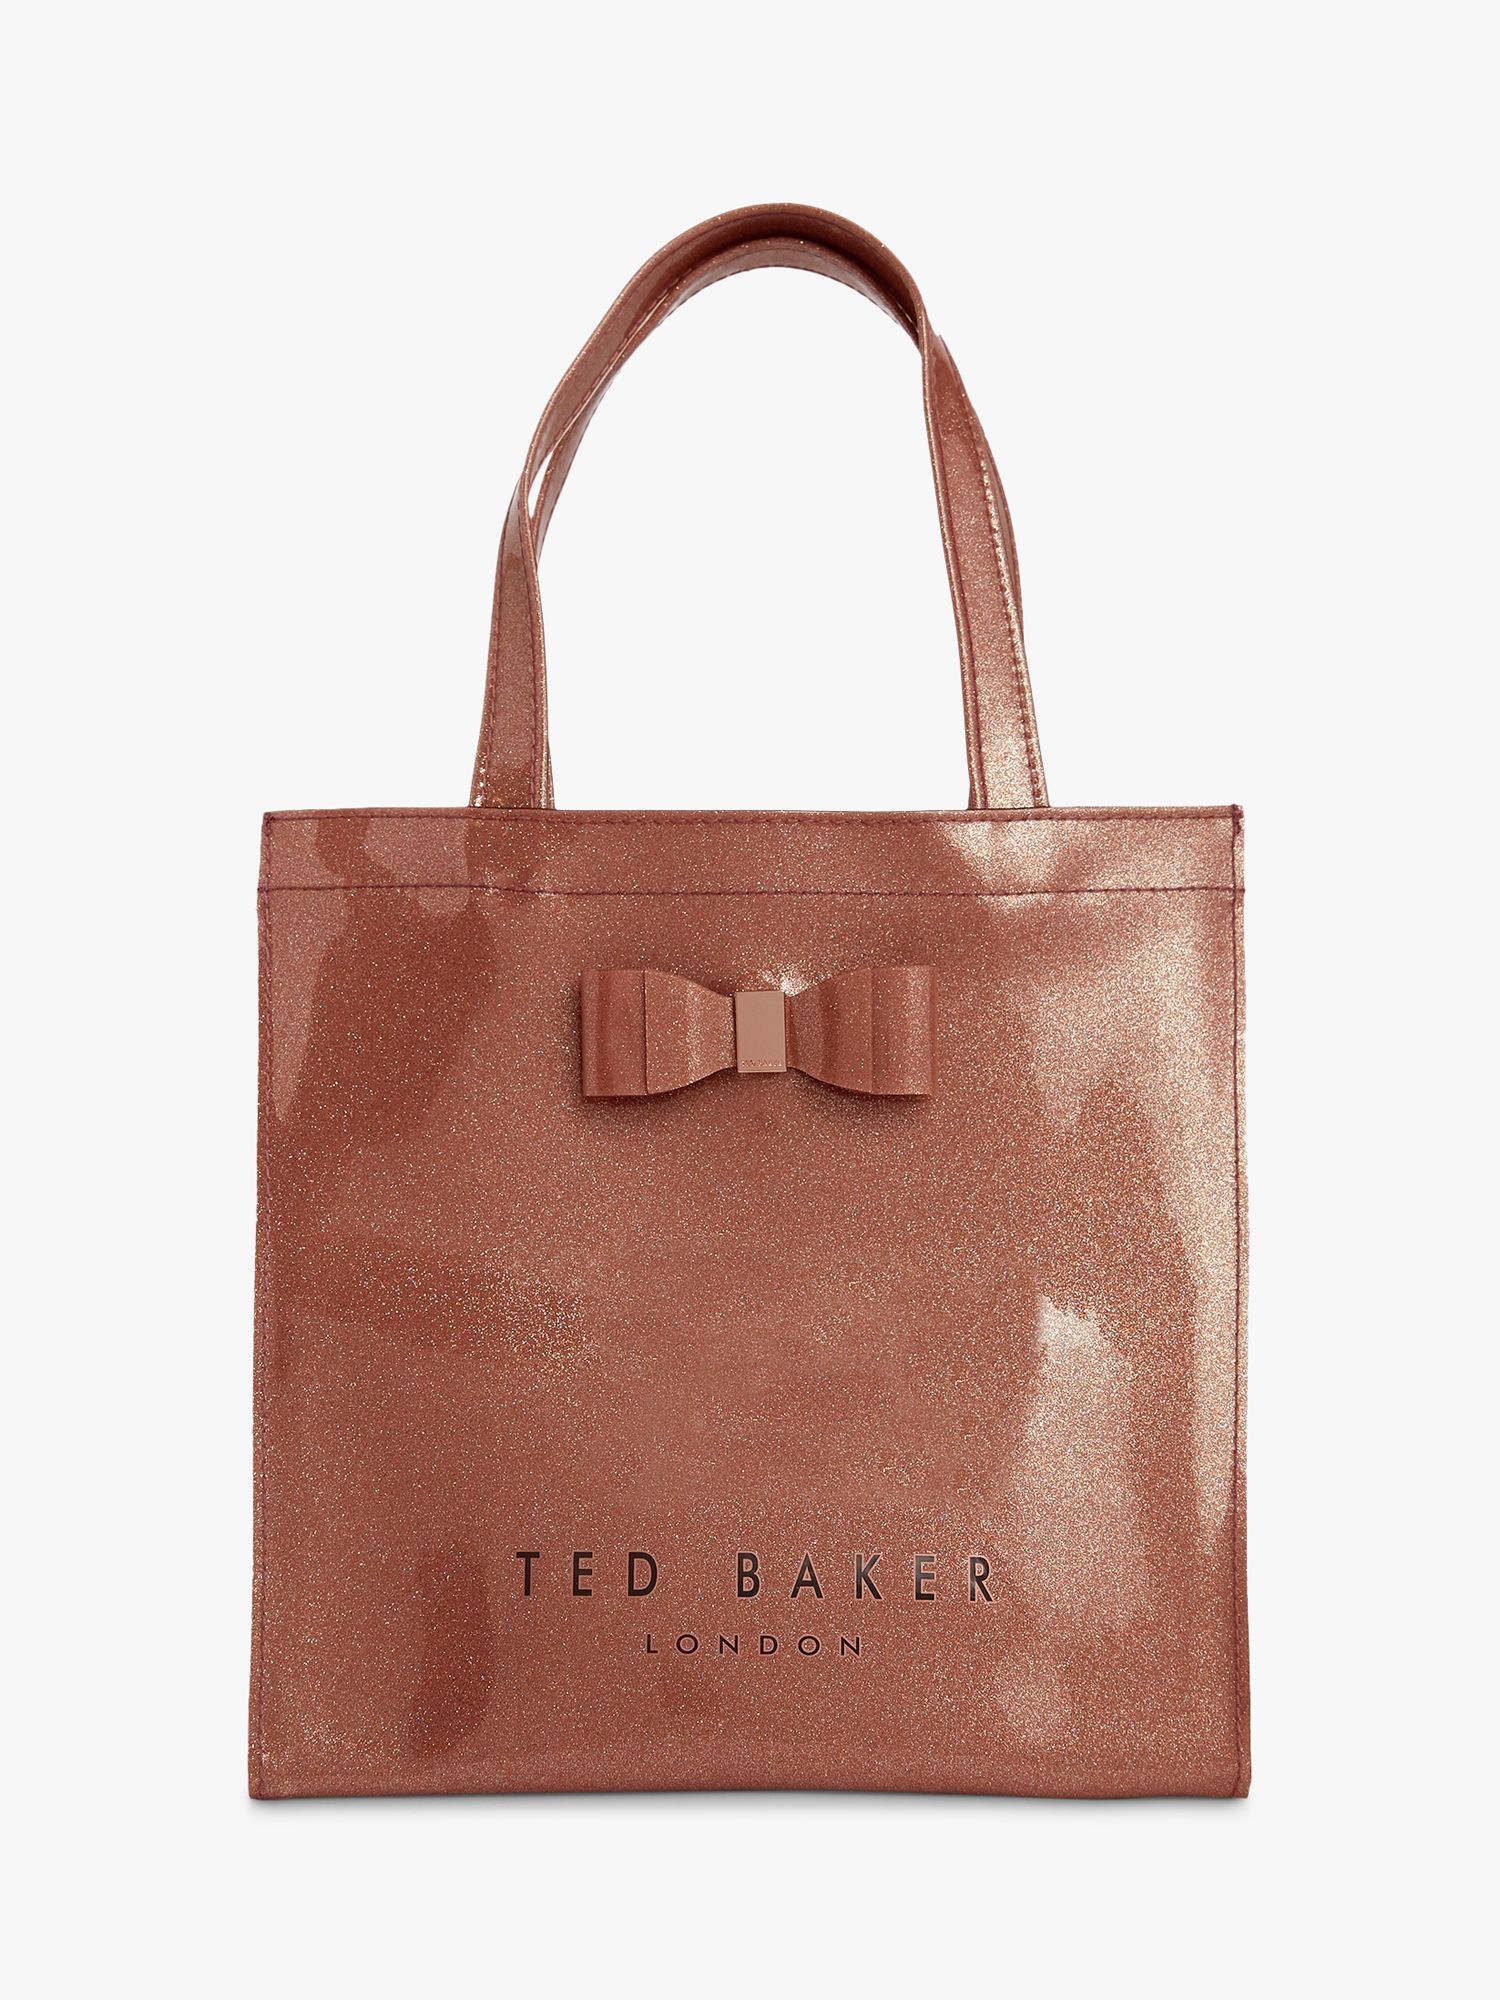 Ted Baker London, Bags, Ted Baker Rose Gold Bag